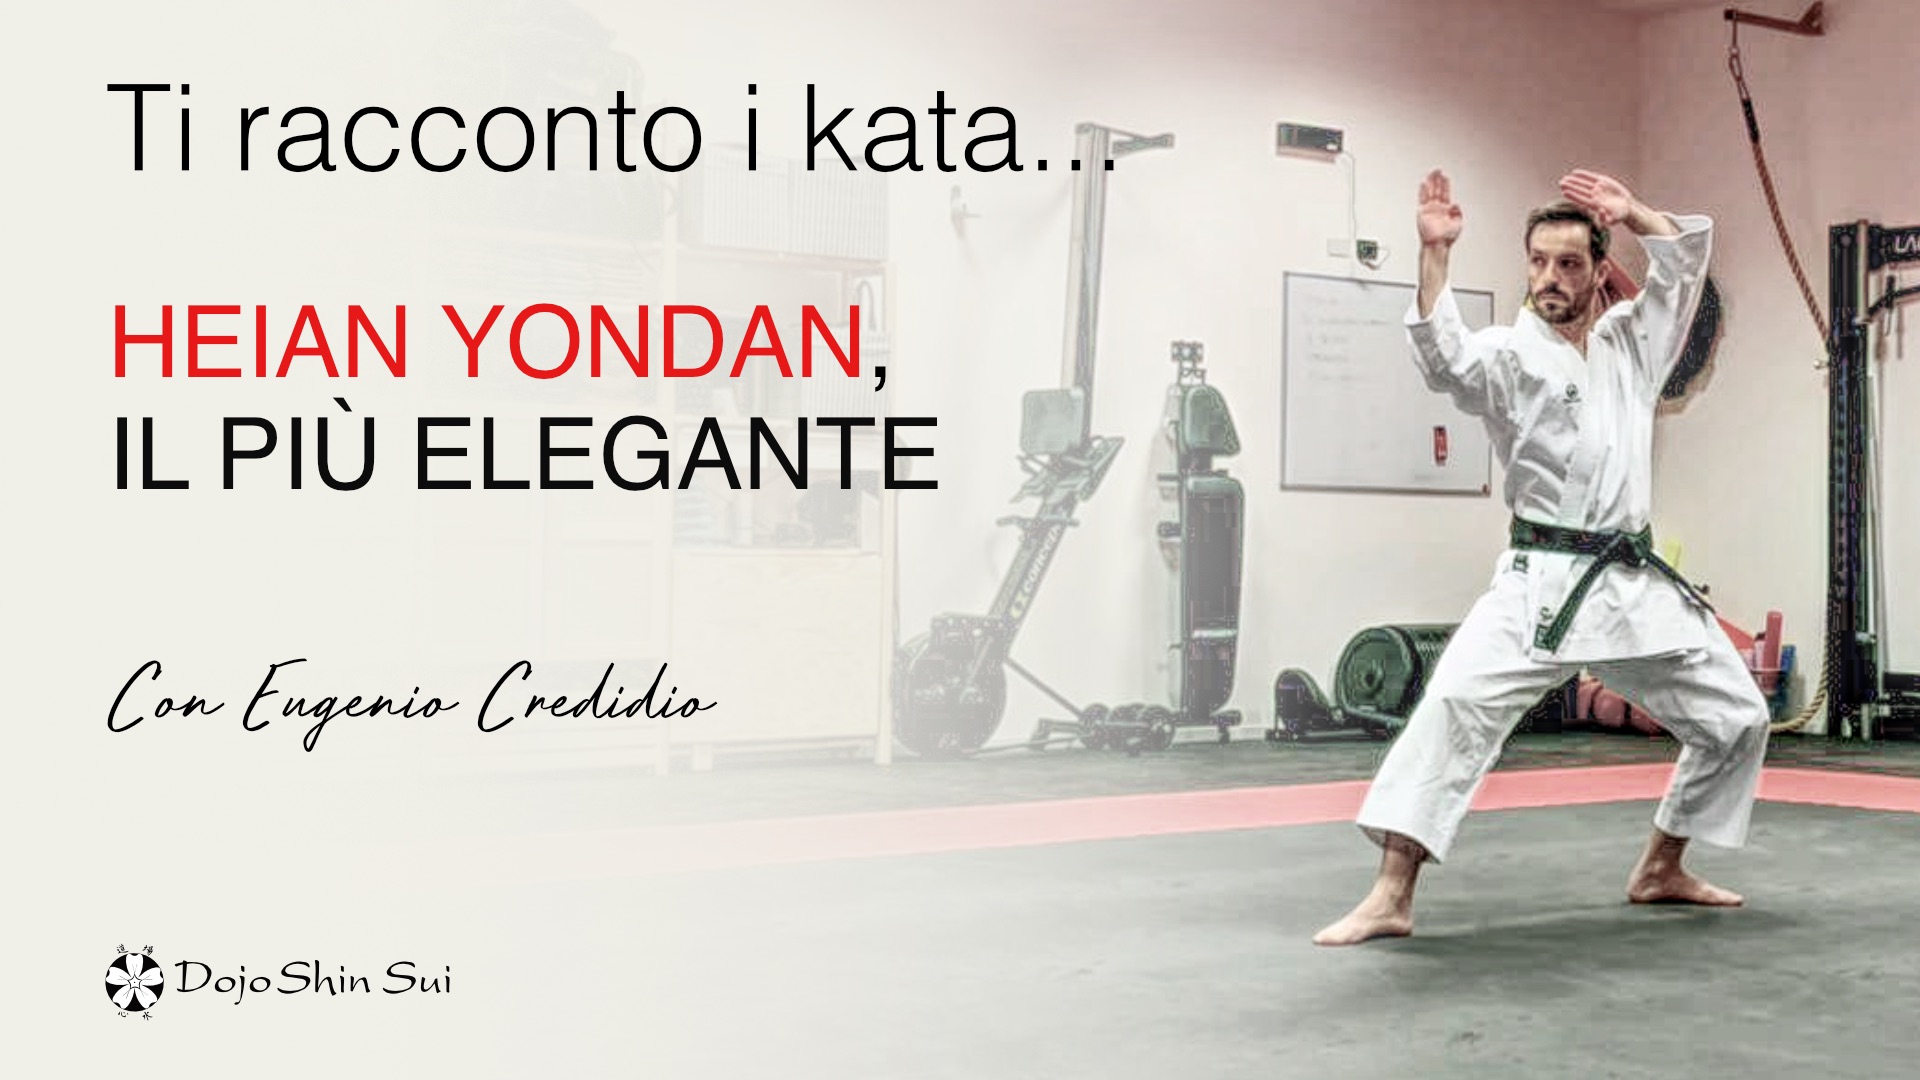 Eugenio Credidio ti racconta Heian Yondan, il più elegante dei kata Heain del karate Shotokan